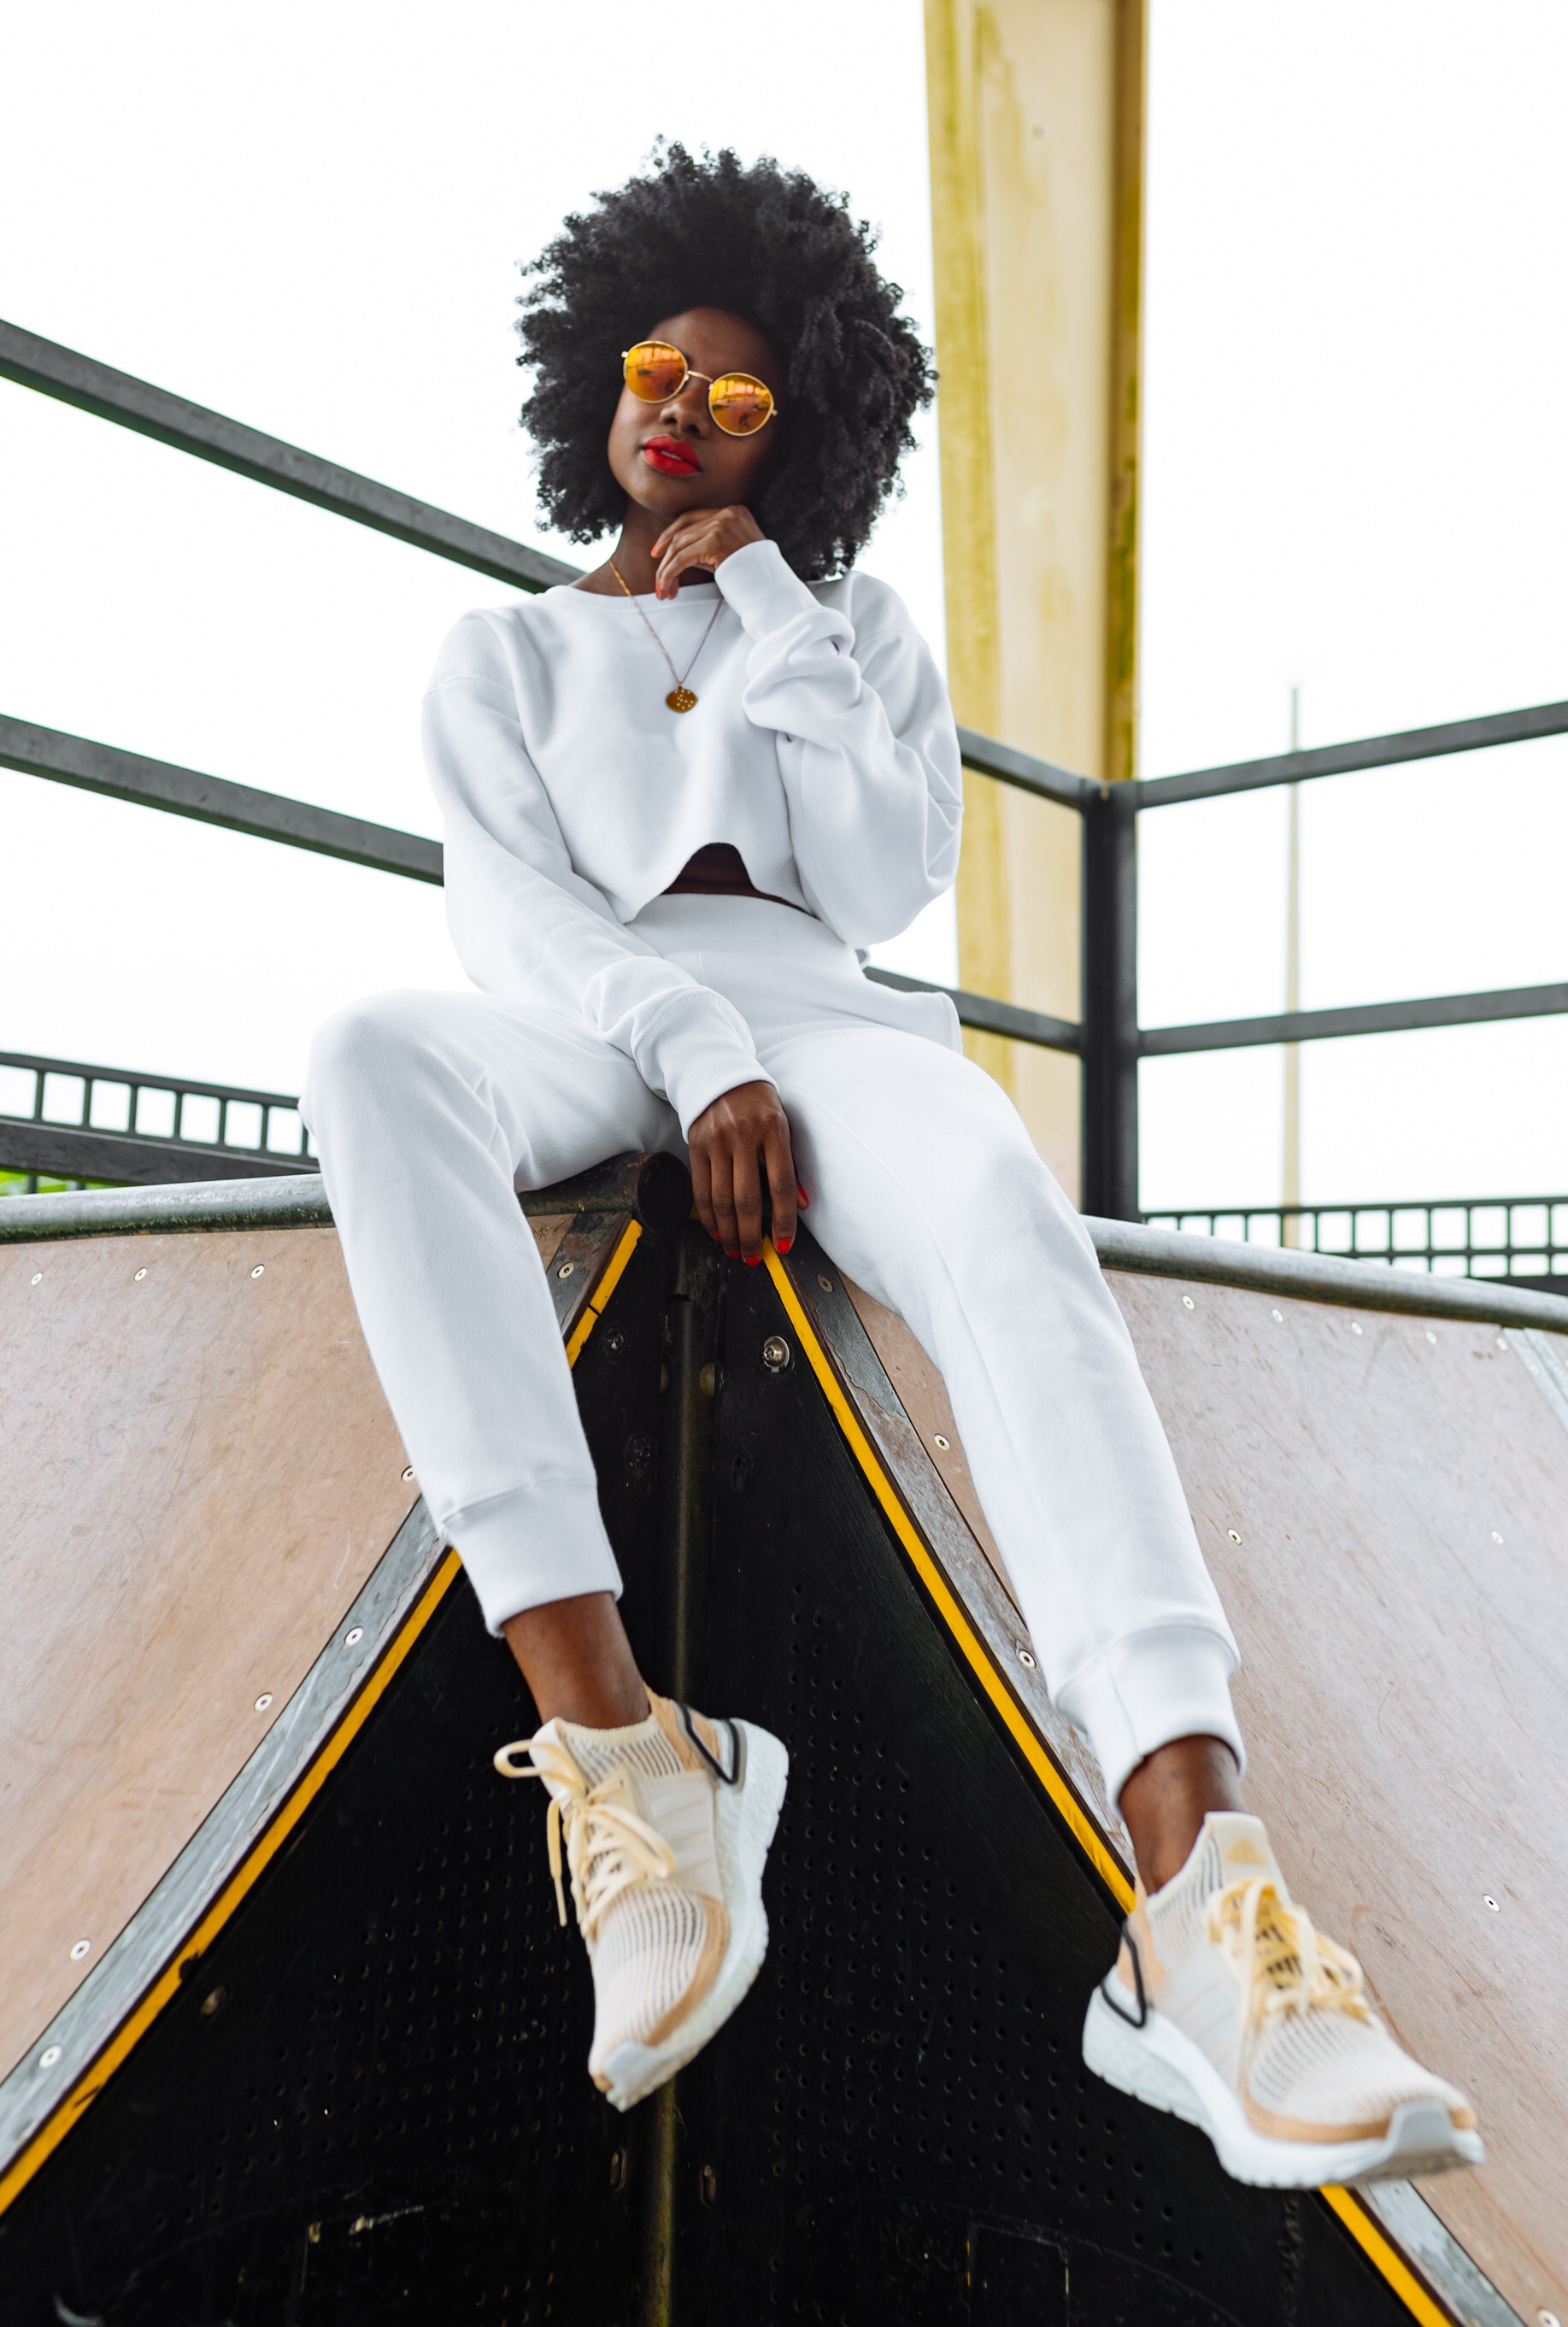 Adidas Ultraboost 19, afro, skater girl, black models, Houston blogger, 4b hair, 4c hair, Finish Line review